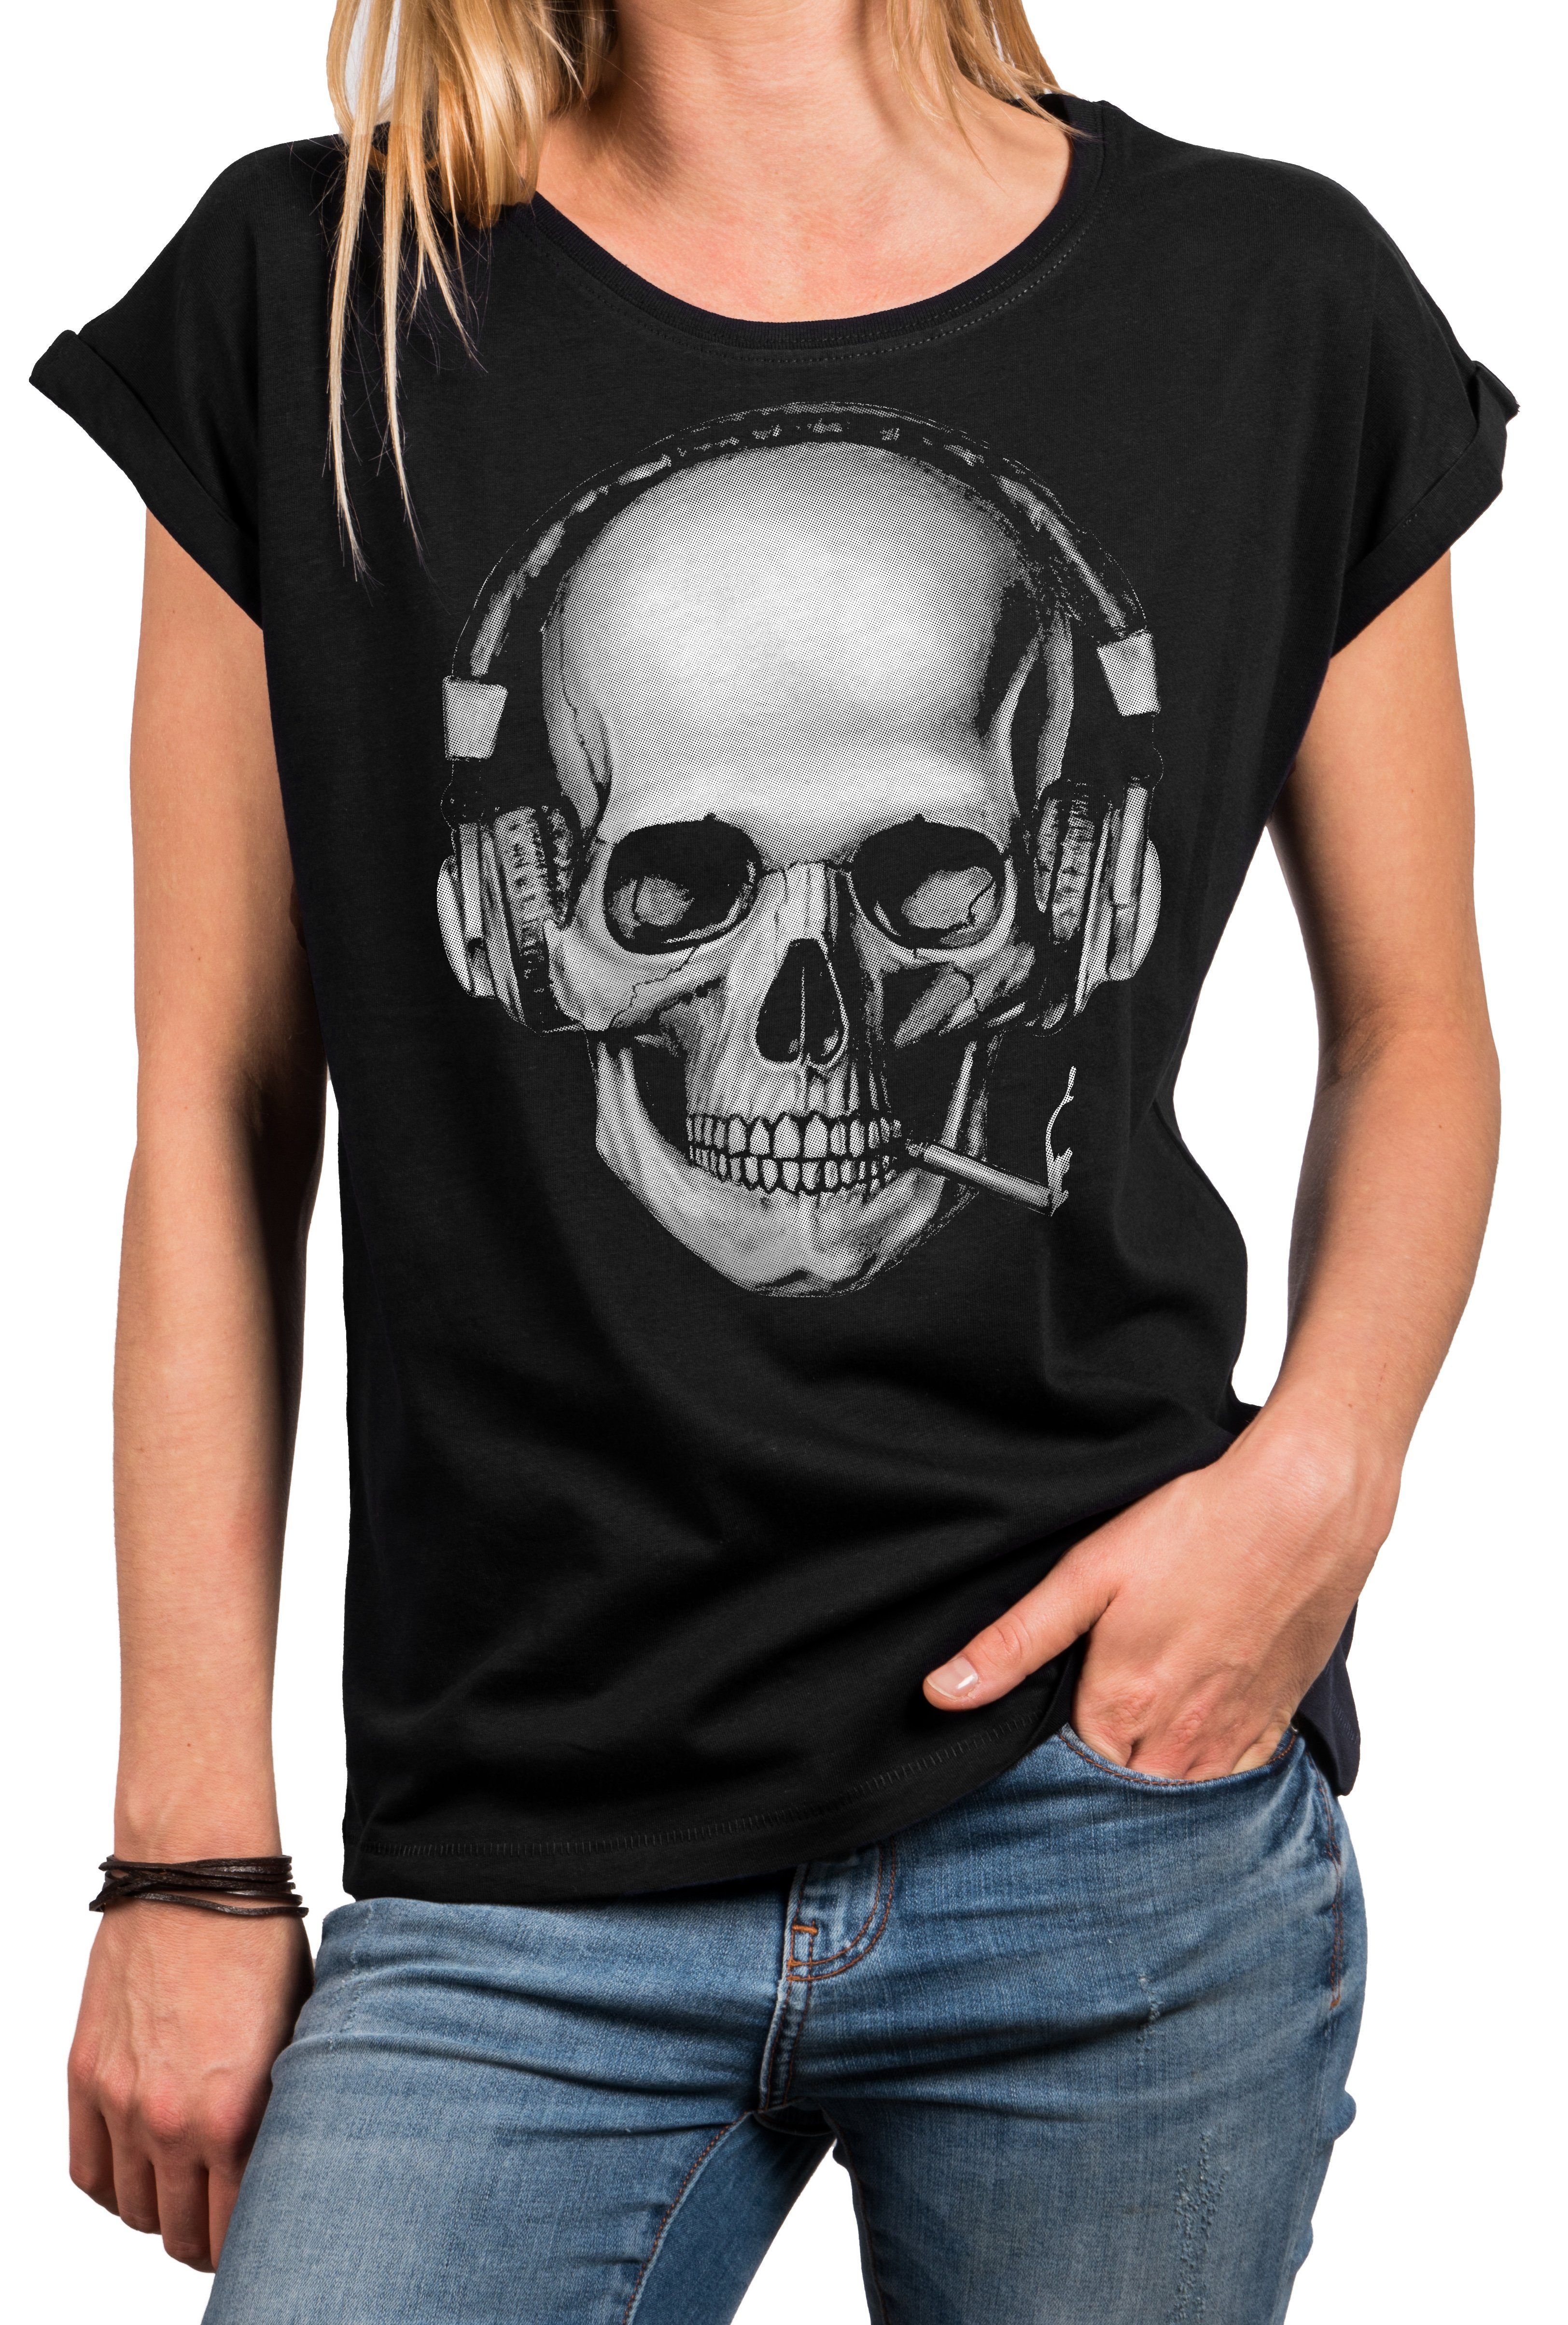 MAKAYA Print-Shirt Damen Cooles mit Design Blau, T-Shirt Größen große Top Schwarz, - (Kurzarm, Grau) Aufdruck Rundhals, Gothic Skull Totenkopf Baumwolle